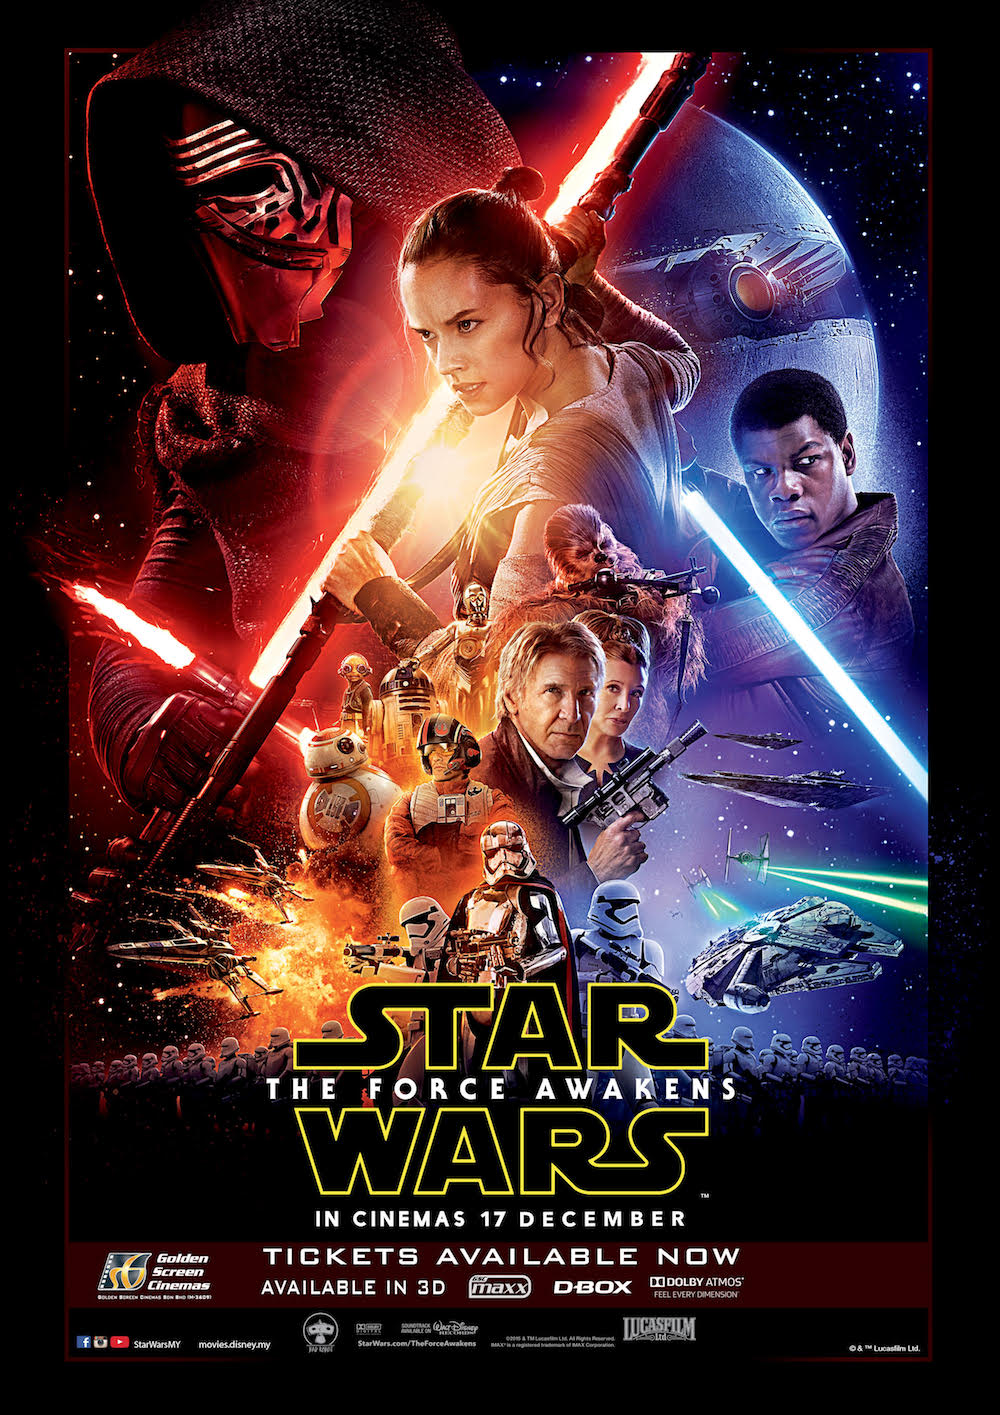 Force terbangun untuk ‘Star Wars’ dengan 11 penghargaan MTV Movie Award